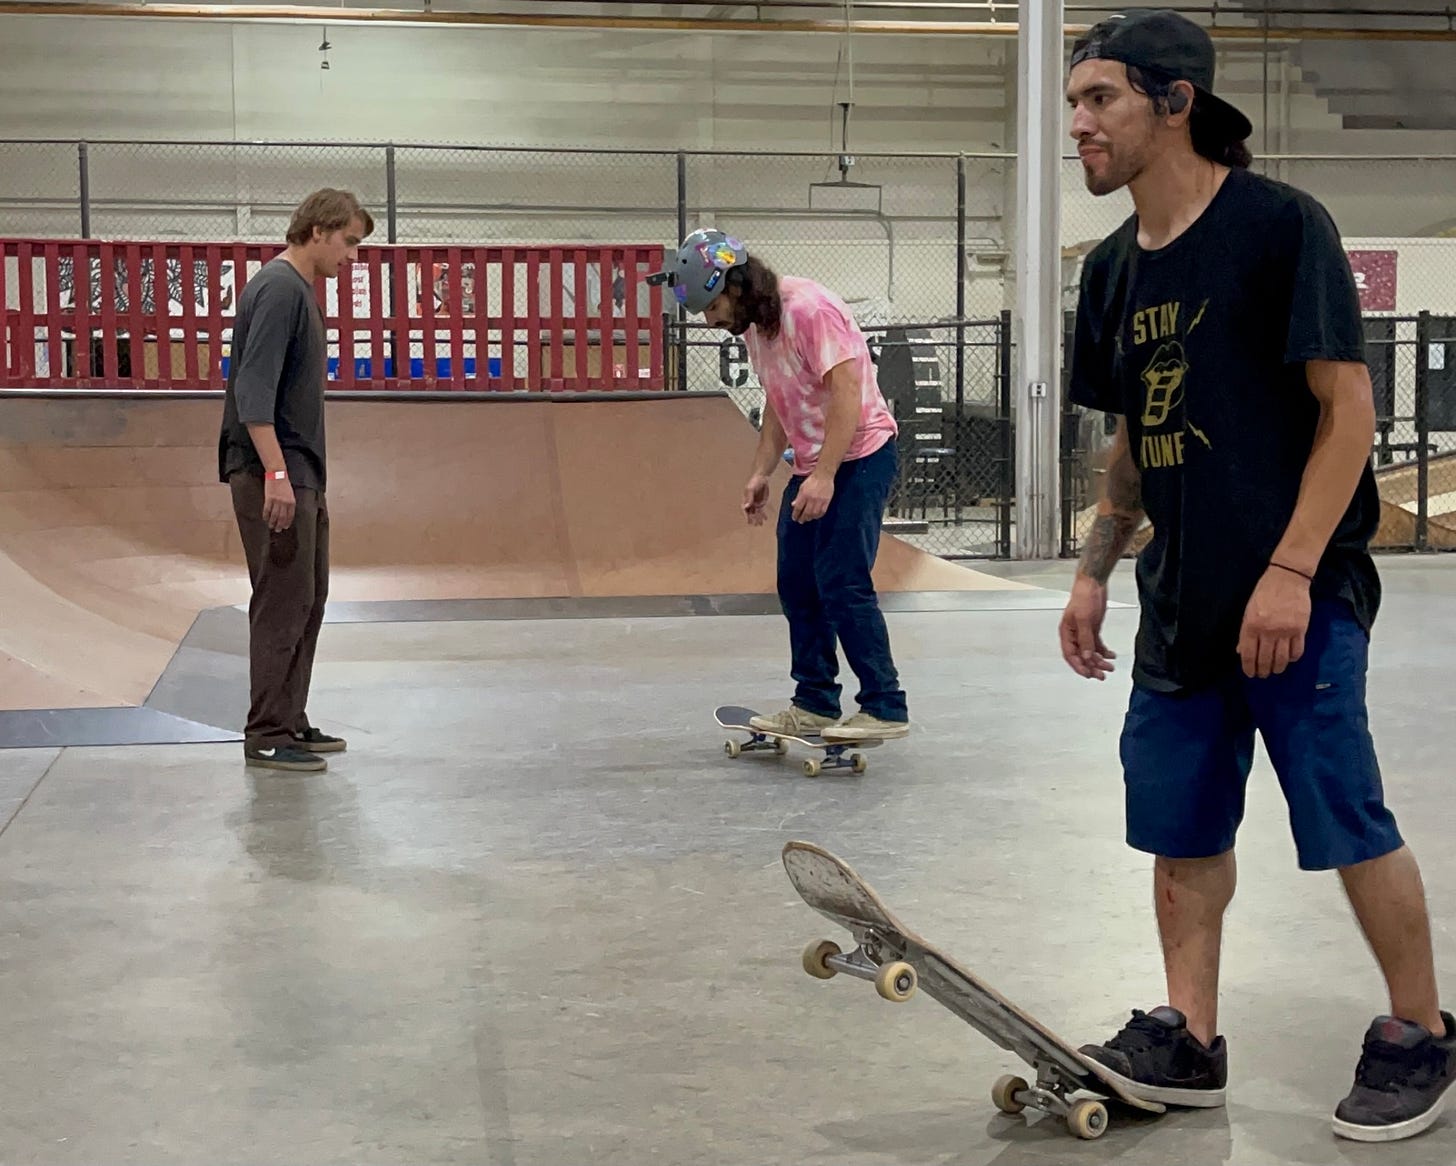 Bennett Sizer (left) teaching Blind Skater, Anthony Ferraro (middle) how to do a flip trick as Blind Skater, Jon Baron (right) kicks up his skateboard to walk by